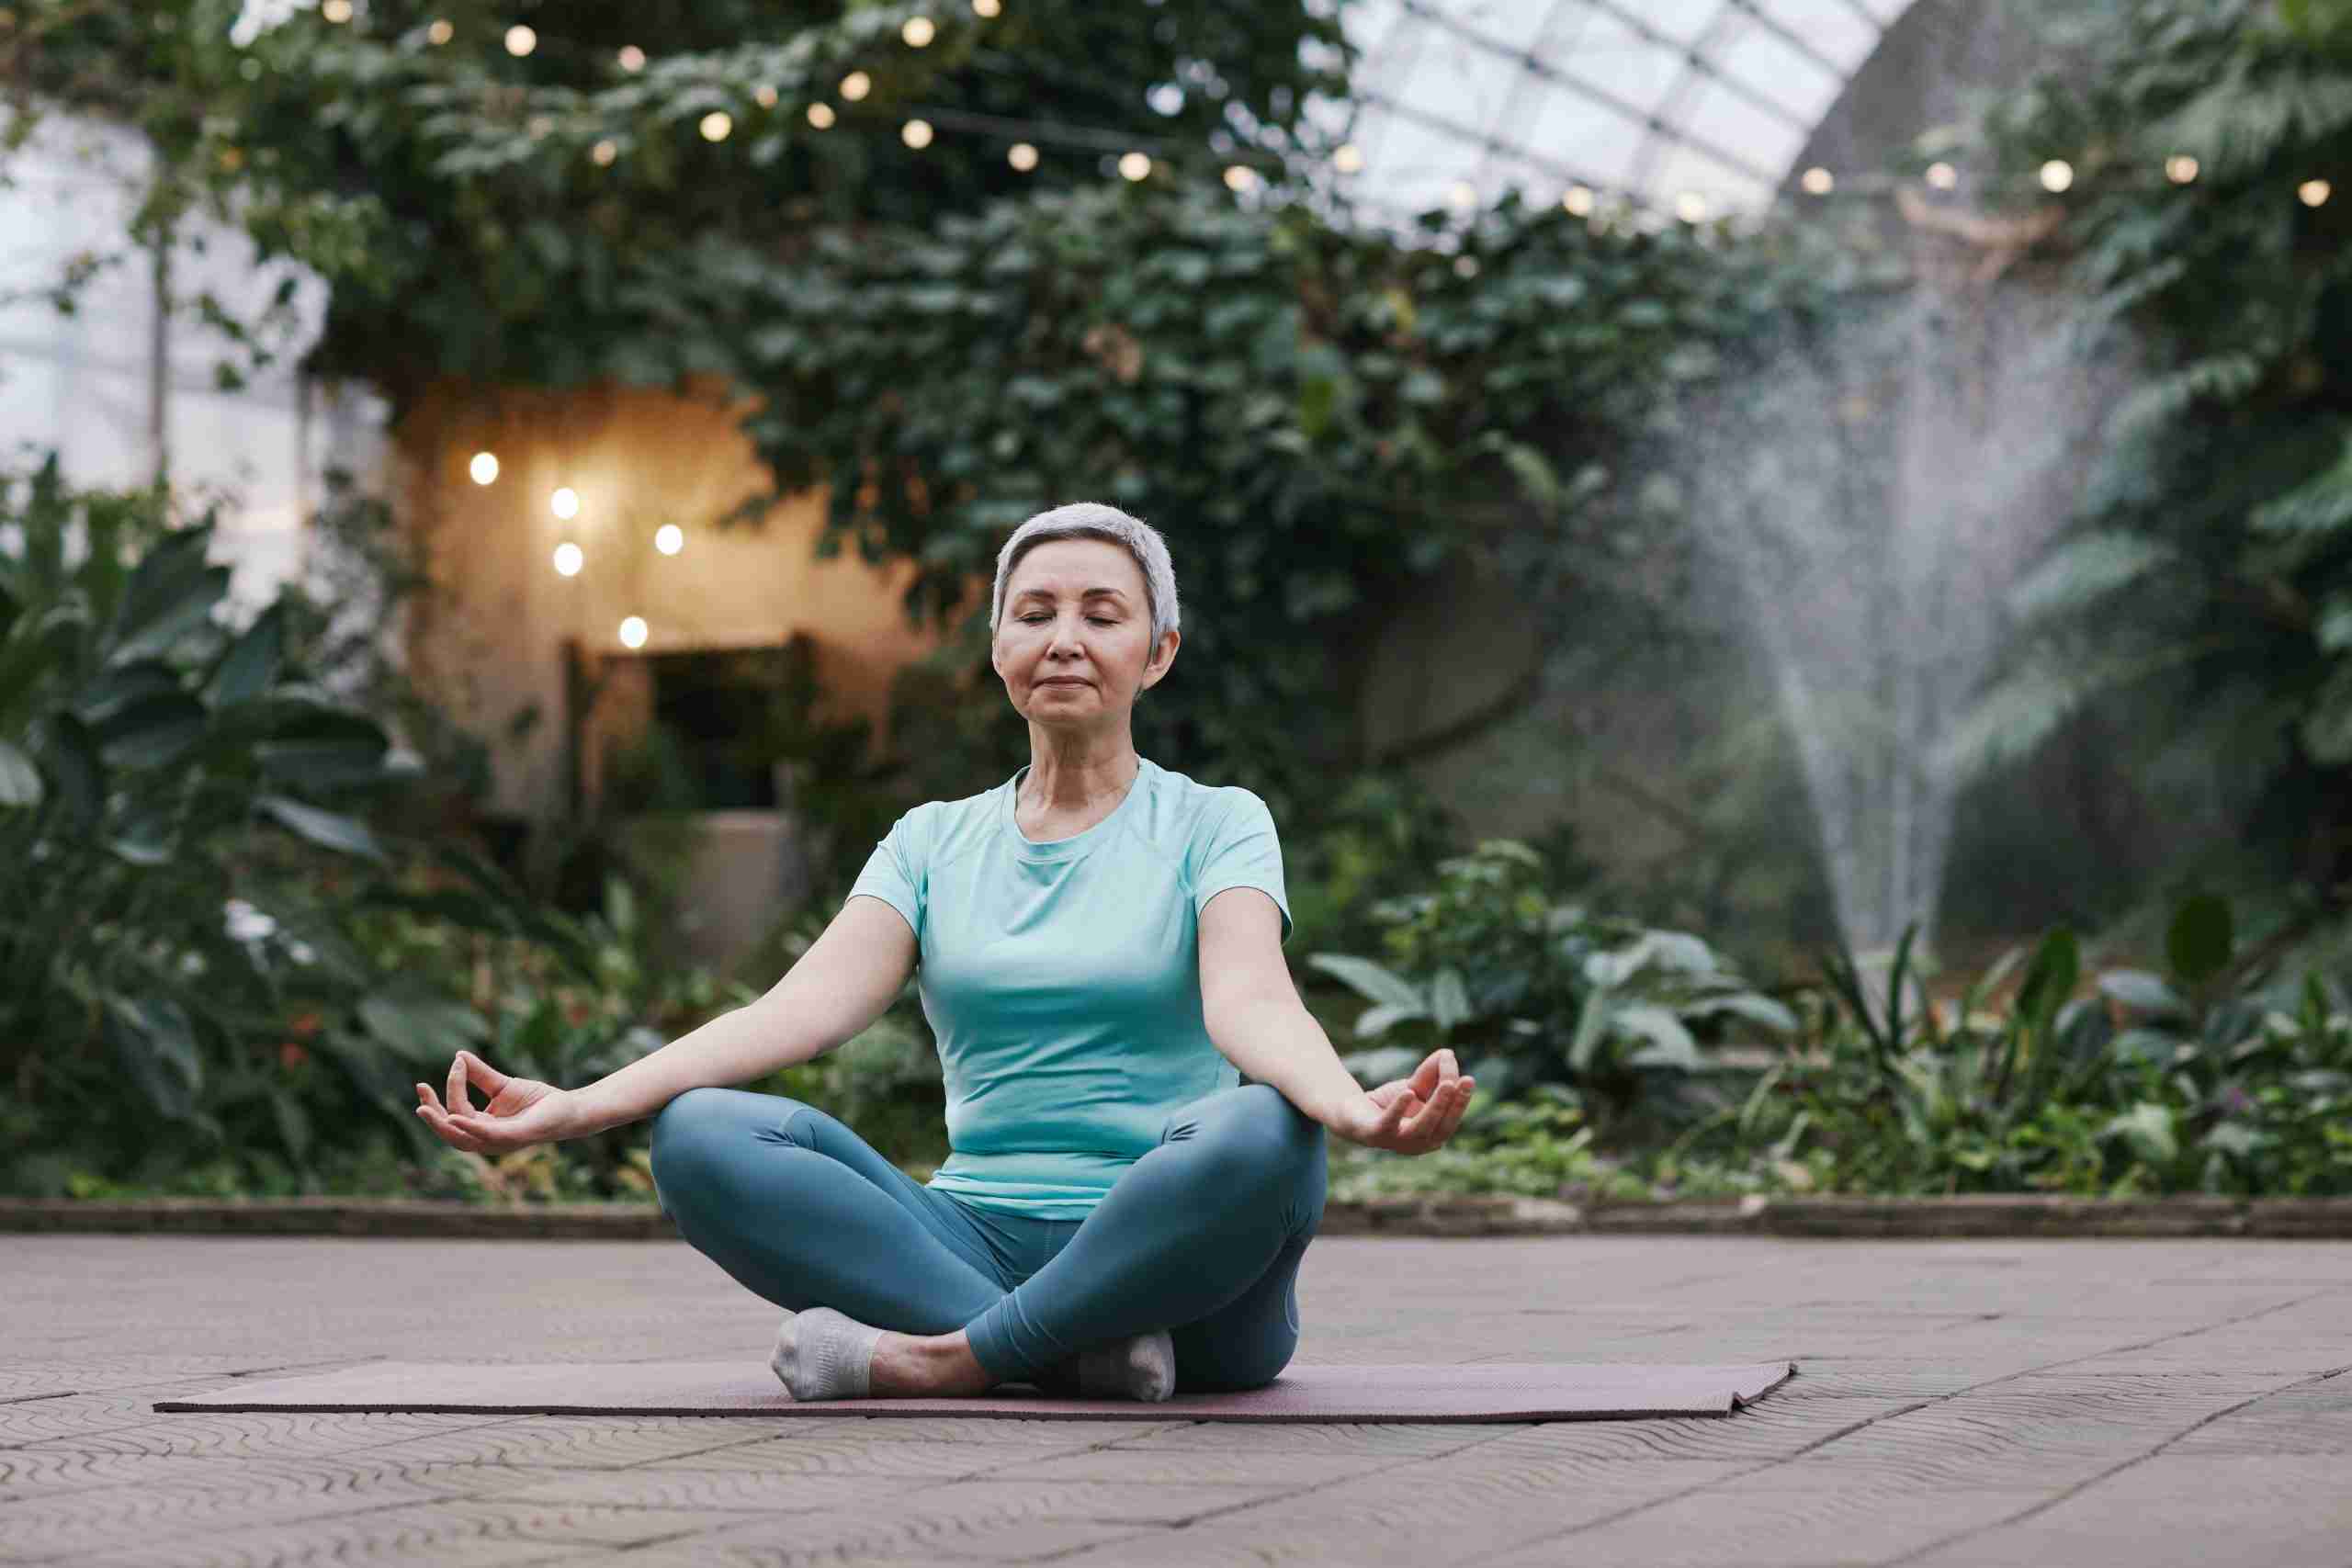 ældre dame sidder på yogamåtten og mediterer i den grønne smukke have sundhed og skønhed https://before-night-falls.com/